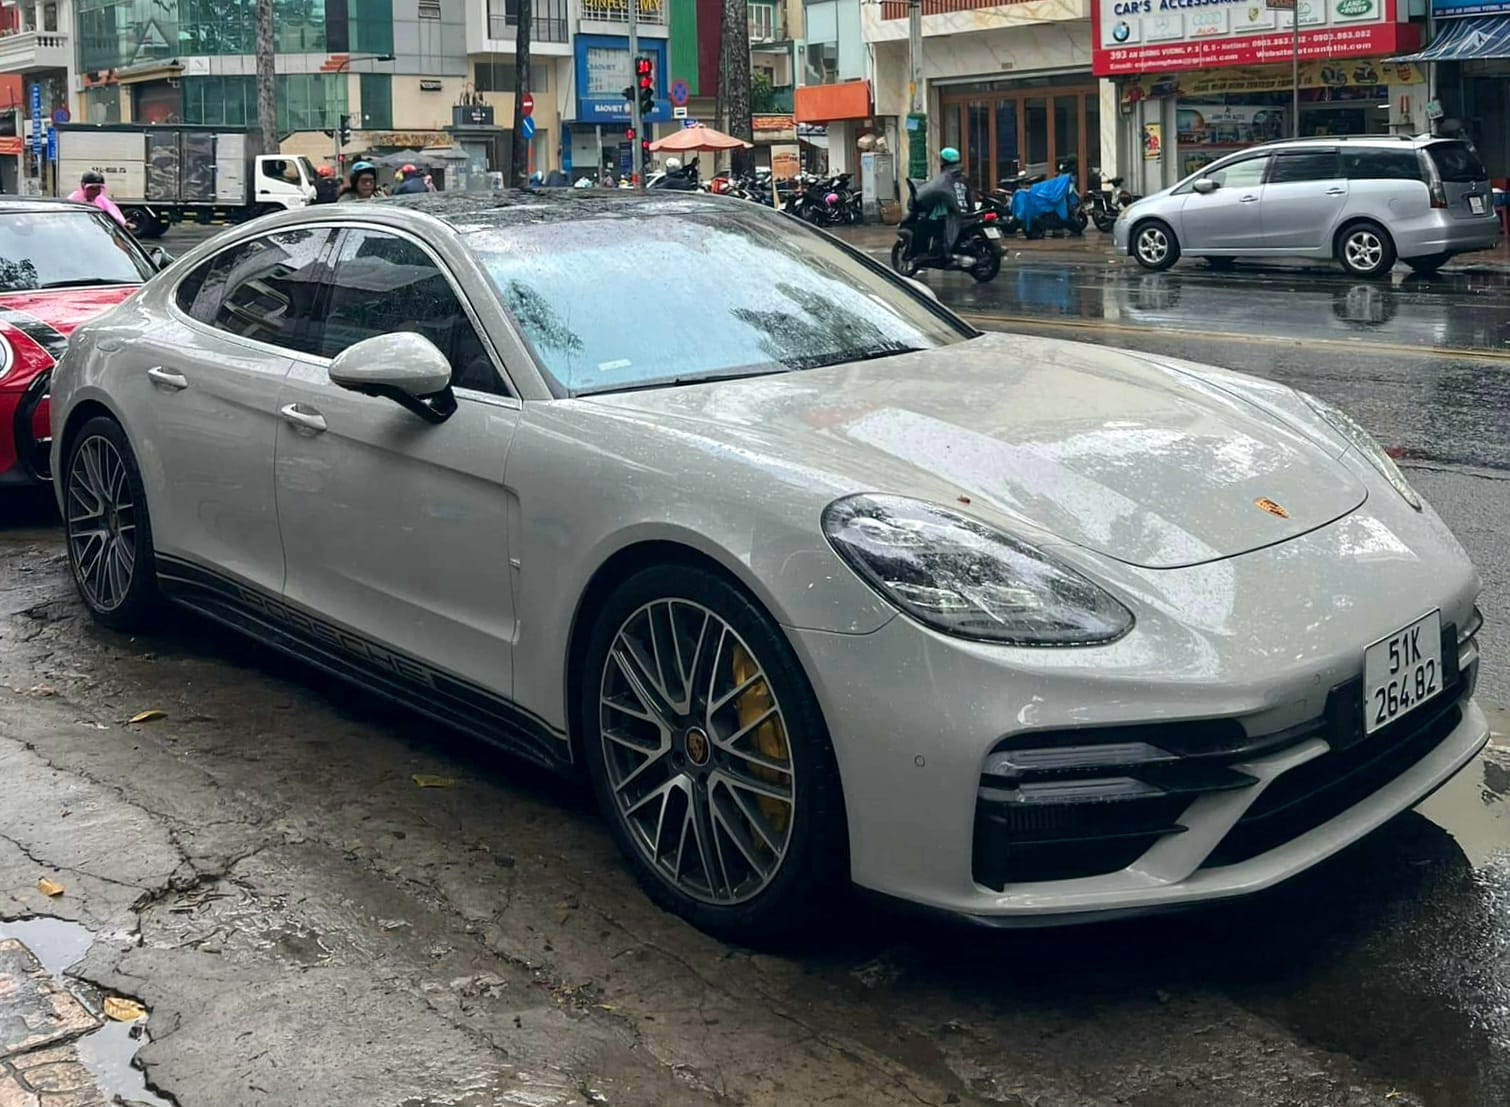 Porsche Panamera bản độc nhất Việt Nam chào giá 12,5 tỷ: Từng